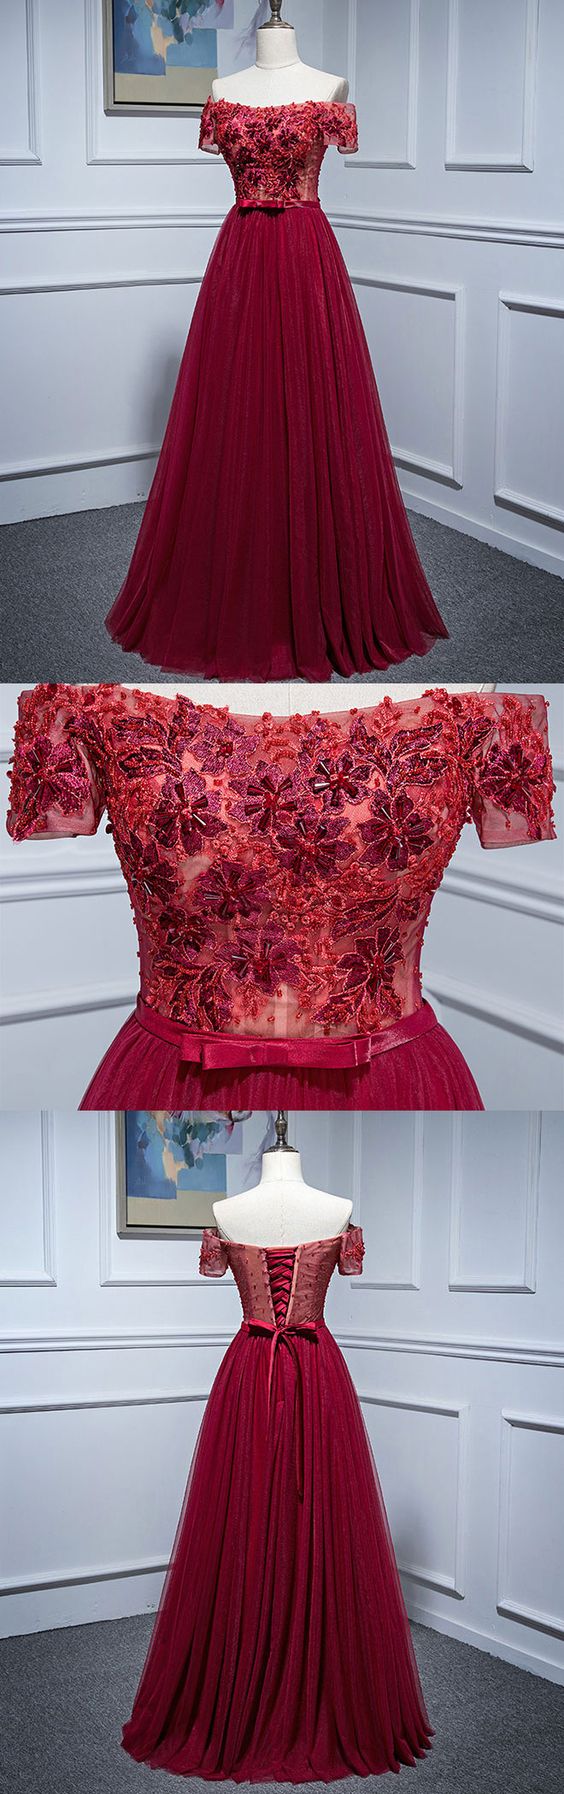 Burgundy Lace Off Shoulder Long Prom Dress, Burgundy Evening Dress M1653